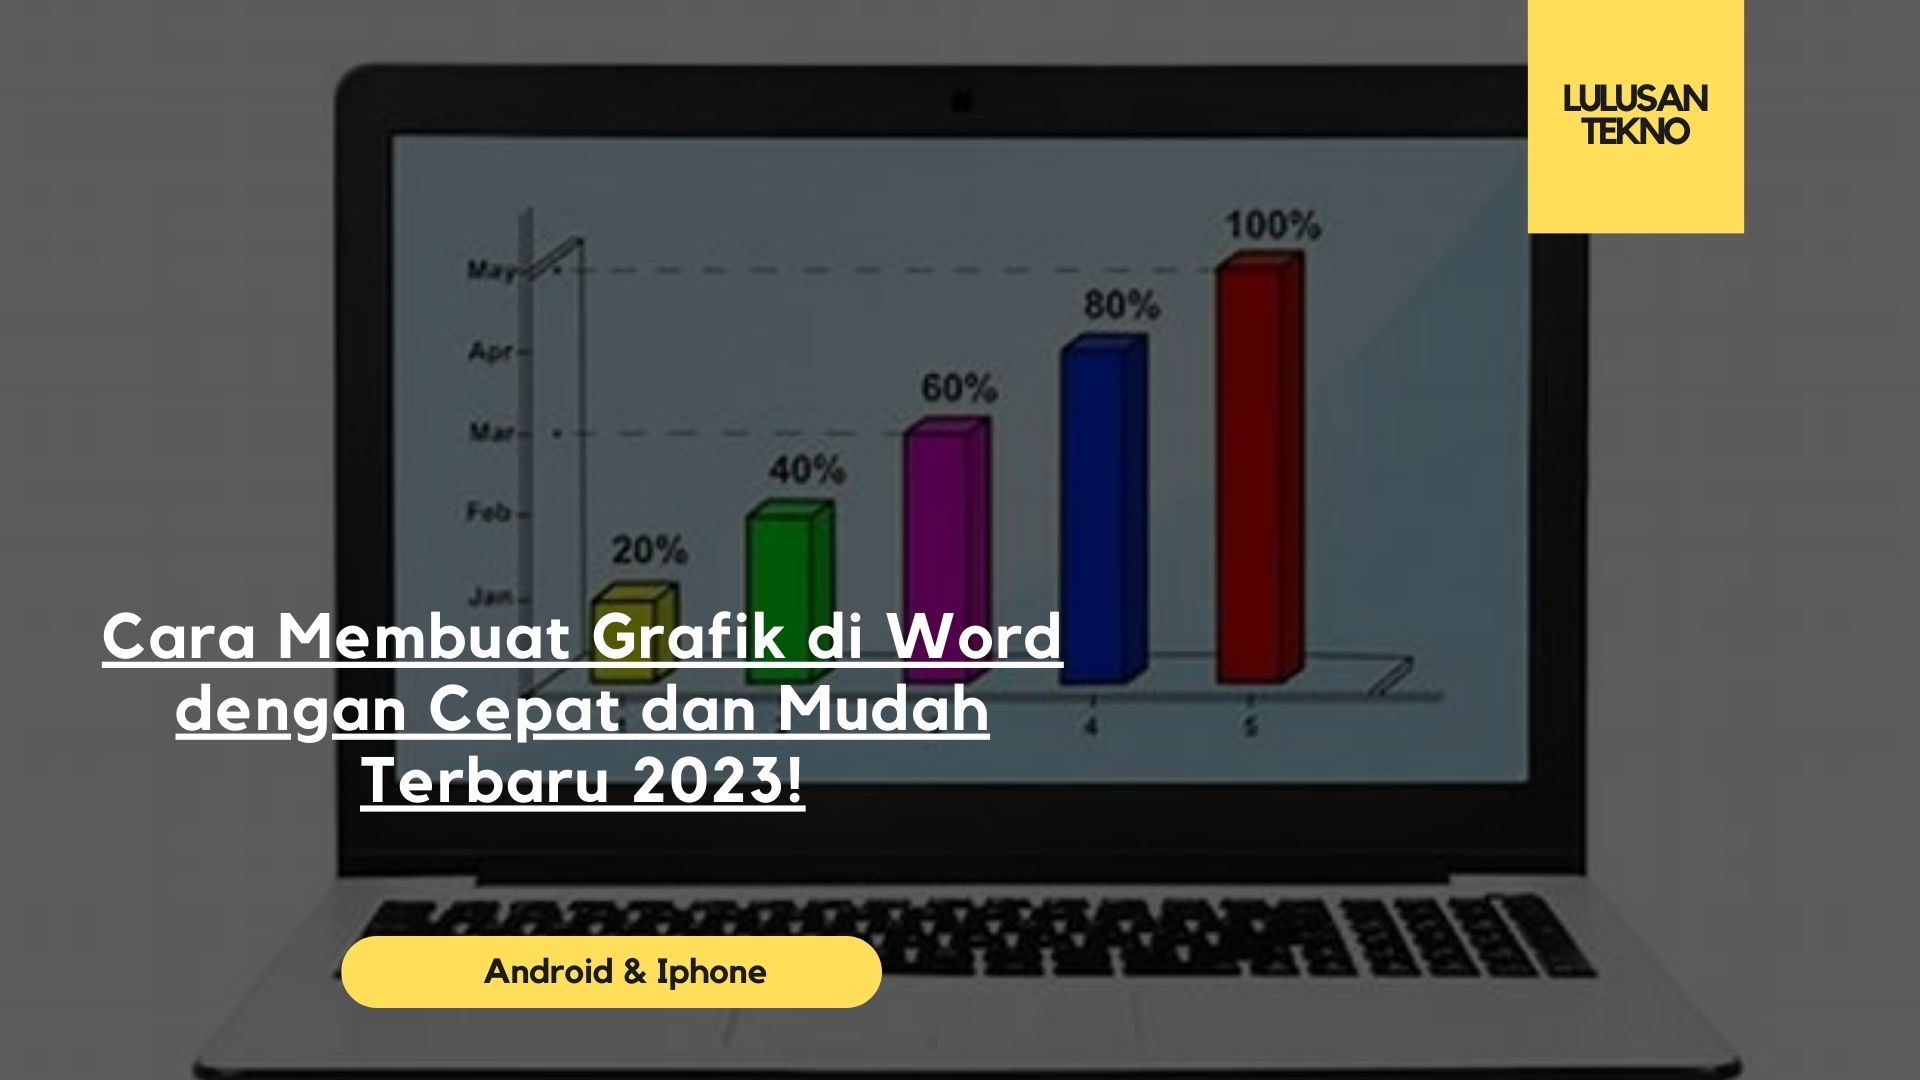 Cara Membuat Grafik di Word dengan Cepat dan Mudah Terbaru 2023!